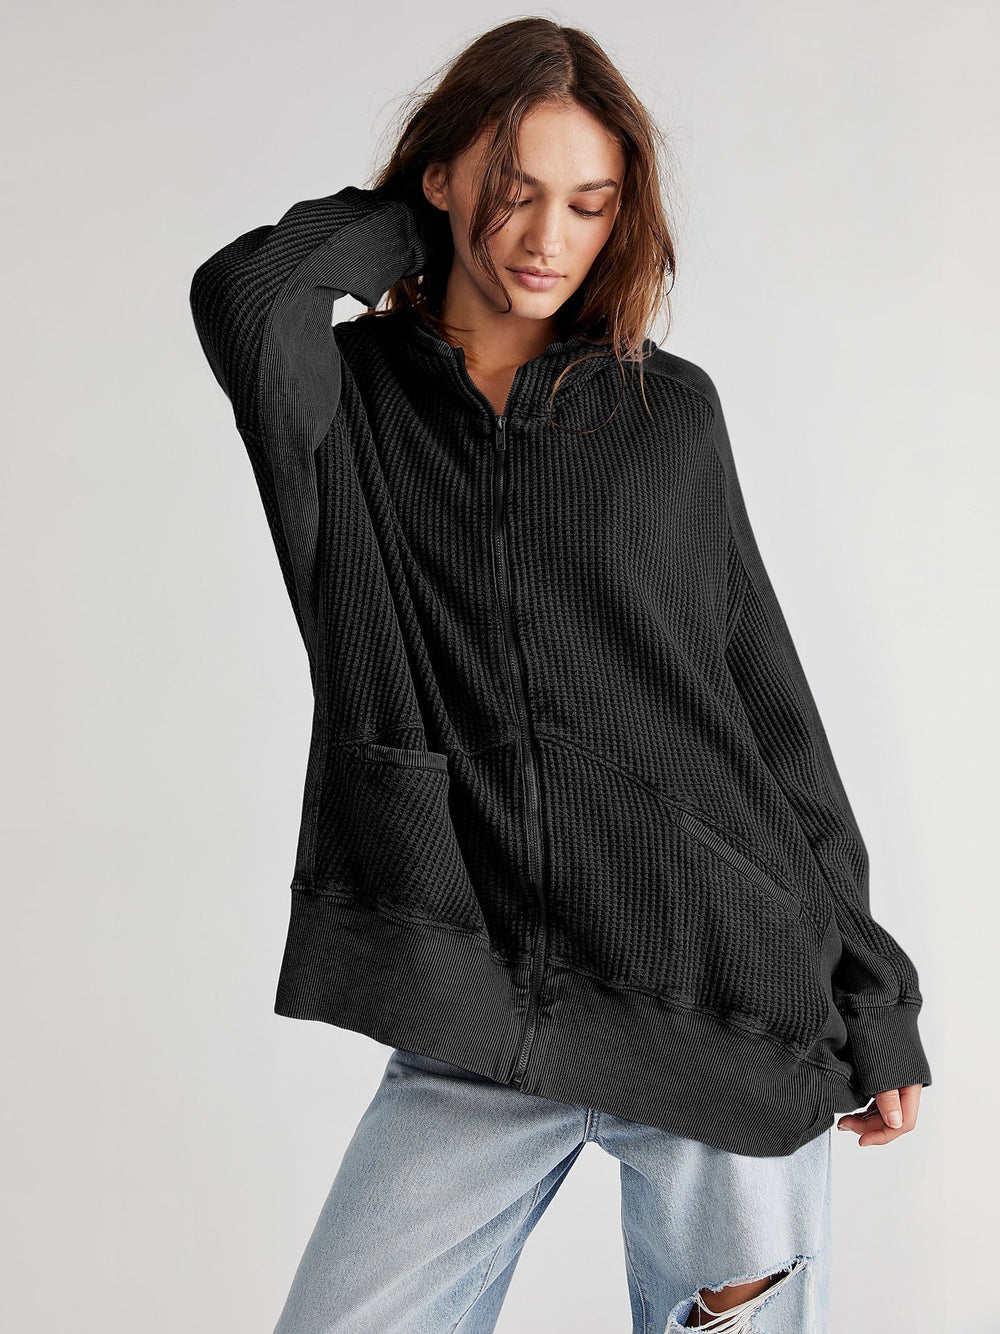 Cardigan Zipper Sweater Home Wear Women Outerwear Hoodie Long Coat